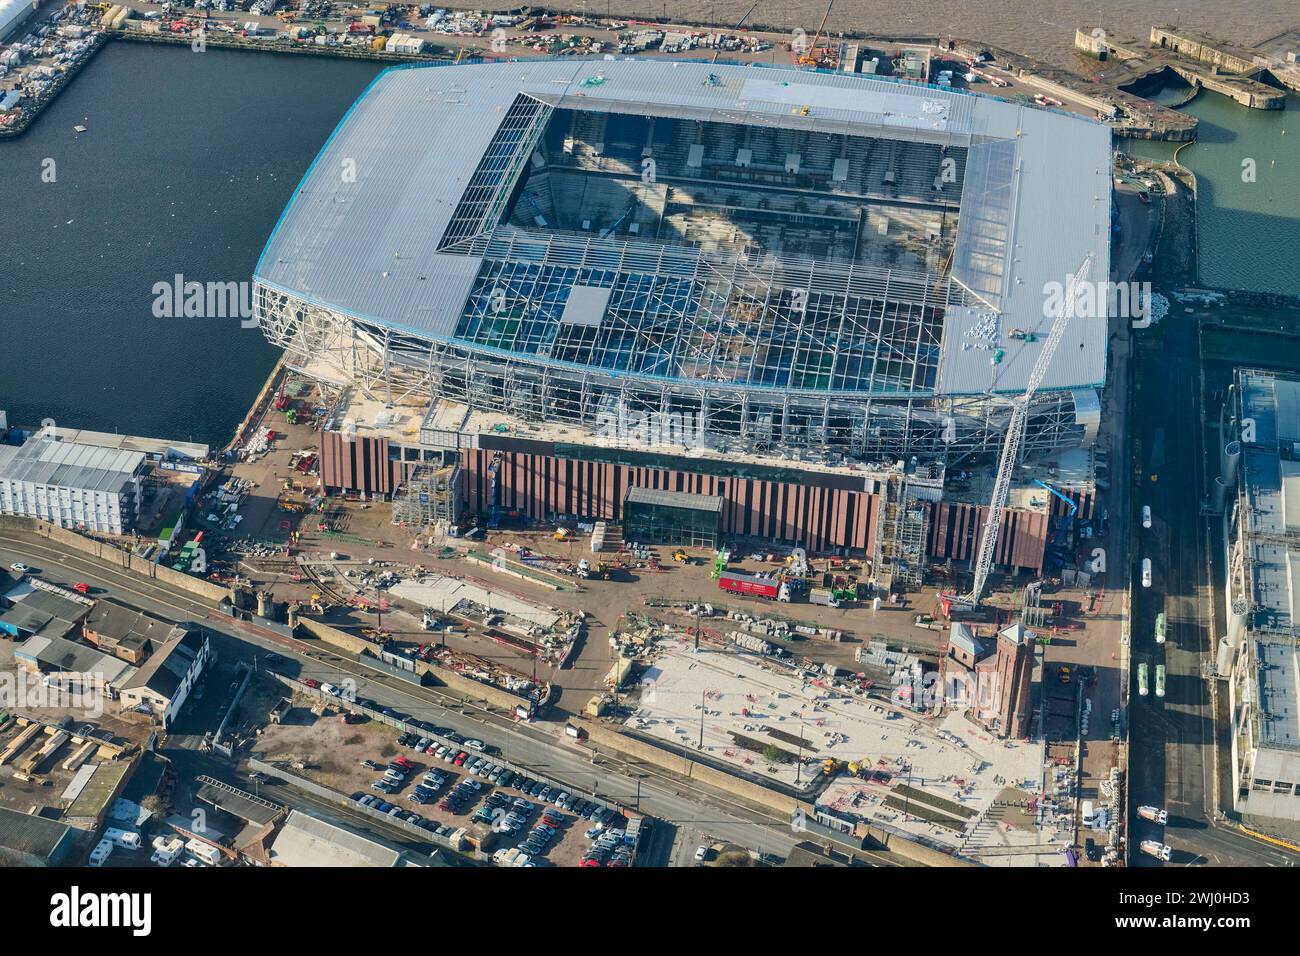 Das Stadion des New Everton Football Club am Bramley Moore Dock, Merseyside, Liverpool, Nordwestengland, Vereinigtes Königreich, im Bau Stockfoto